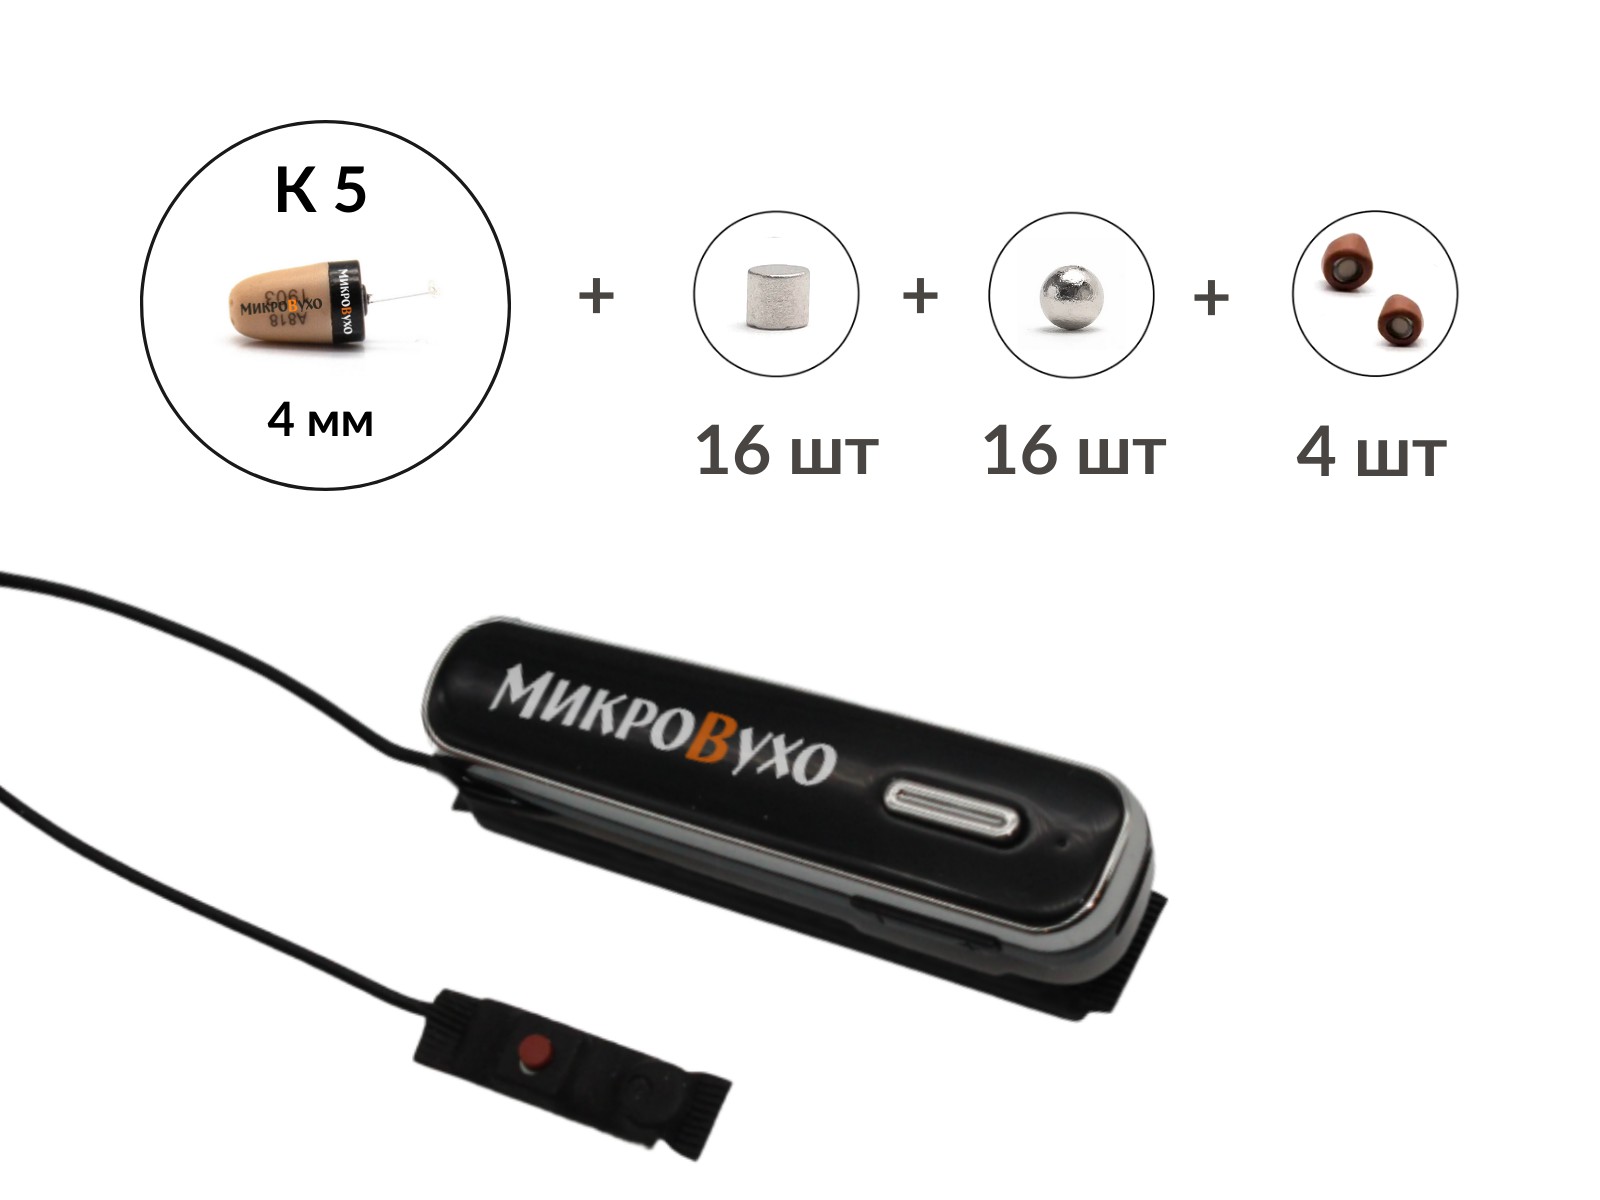 Универсальная гарнитура Bluetooth Box Premier Lite Plus с капсулой K5 4 мм и магнитами 2 мм - изображение 5